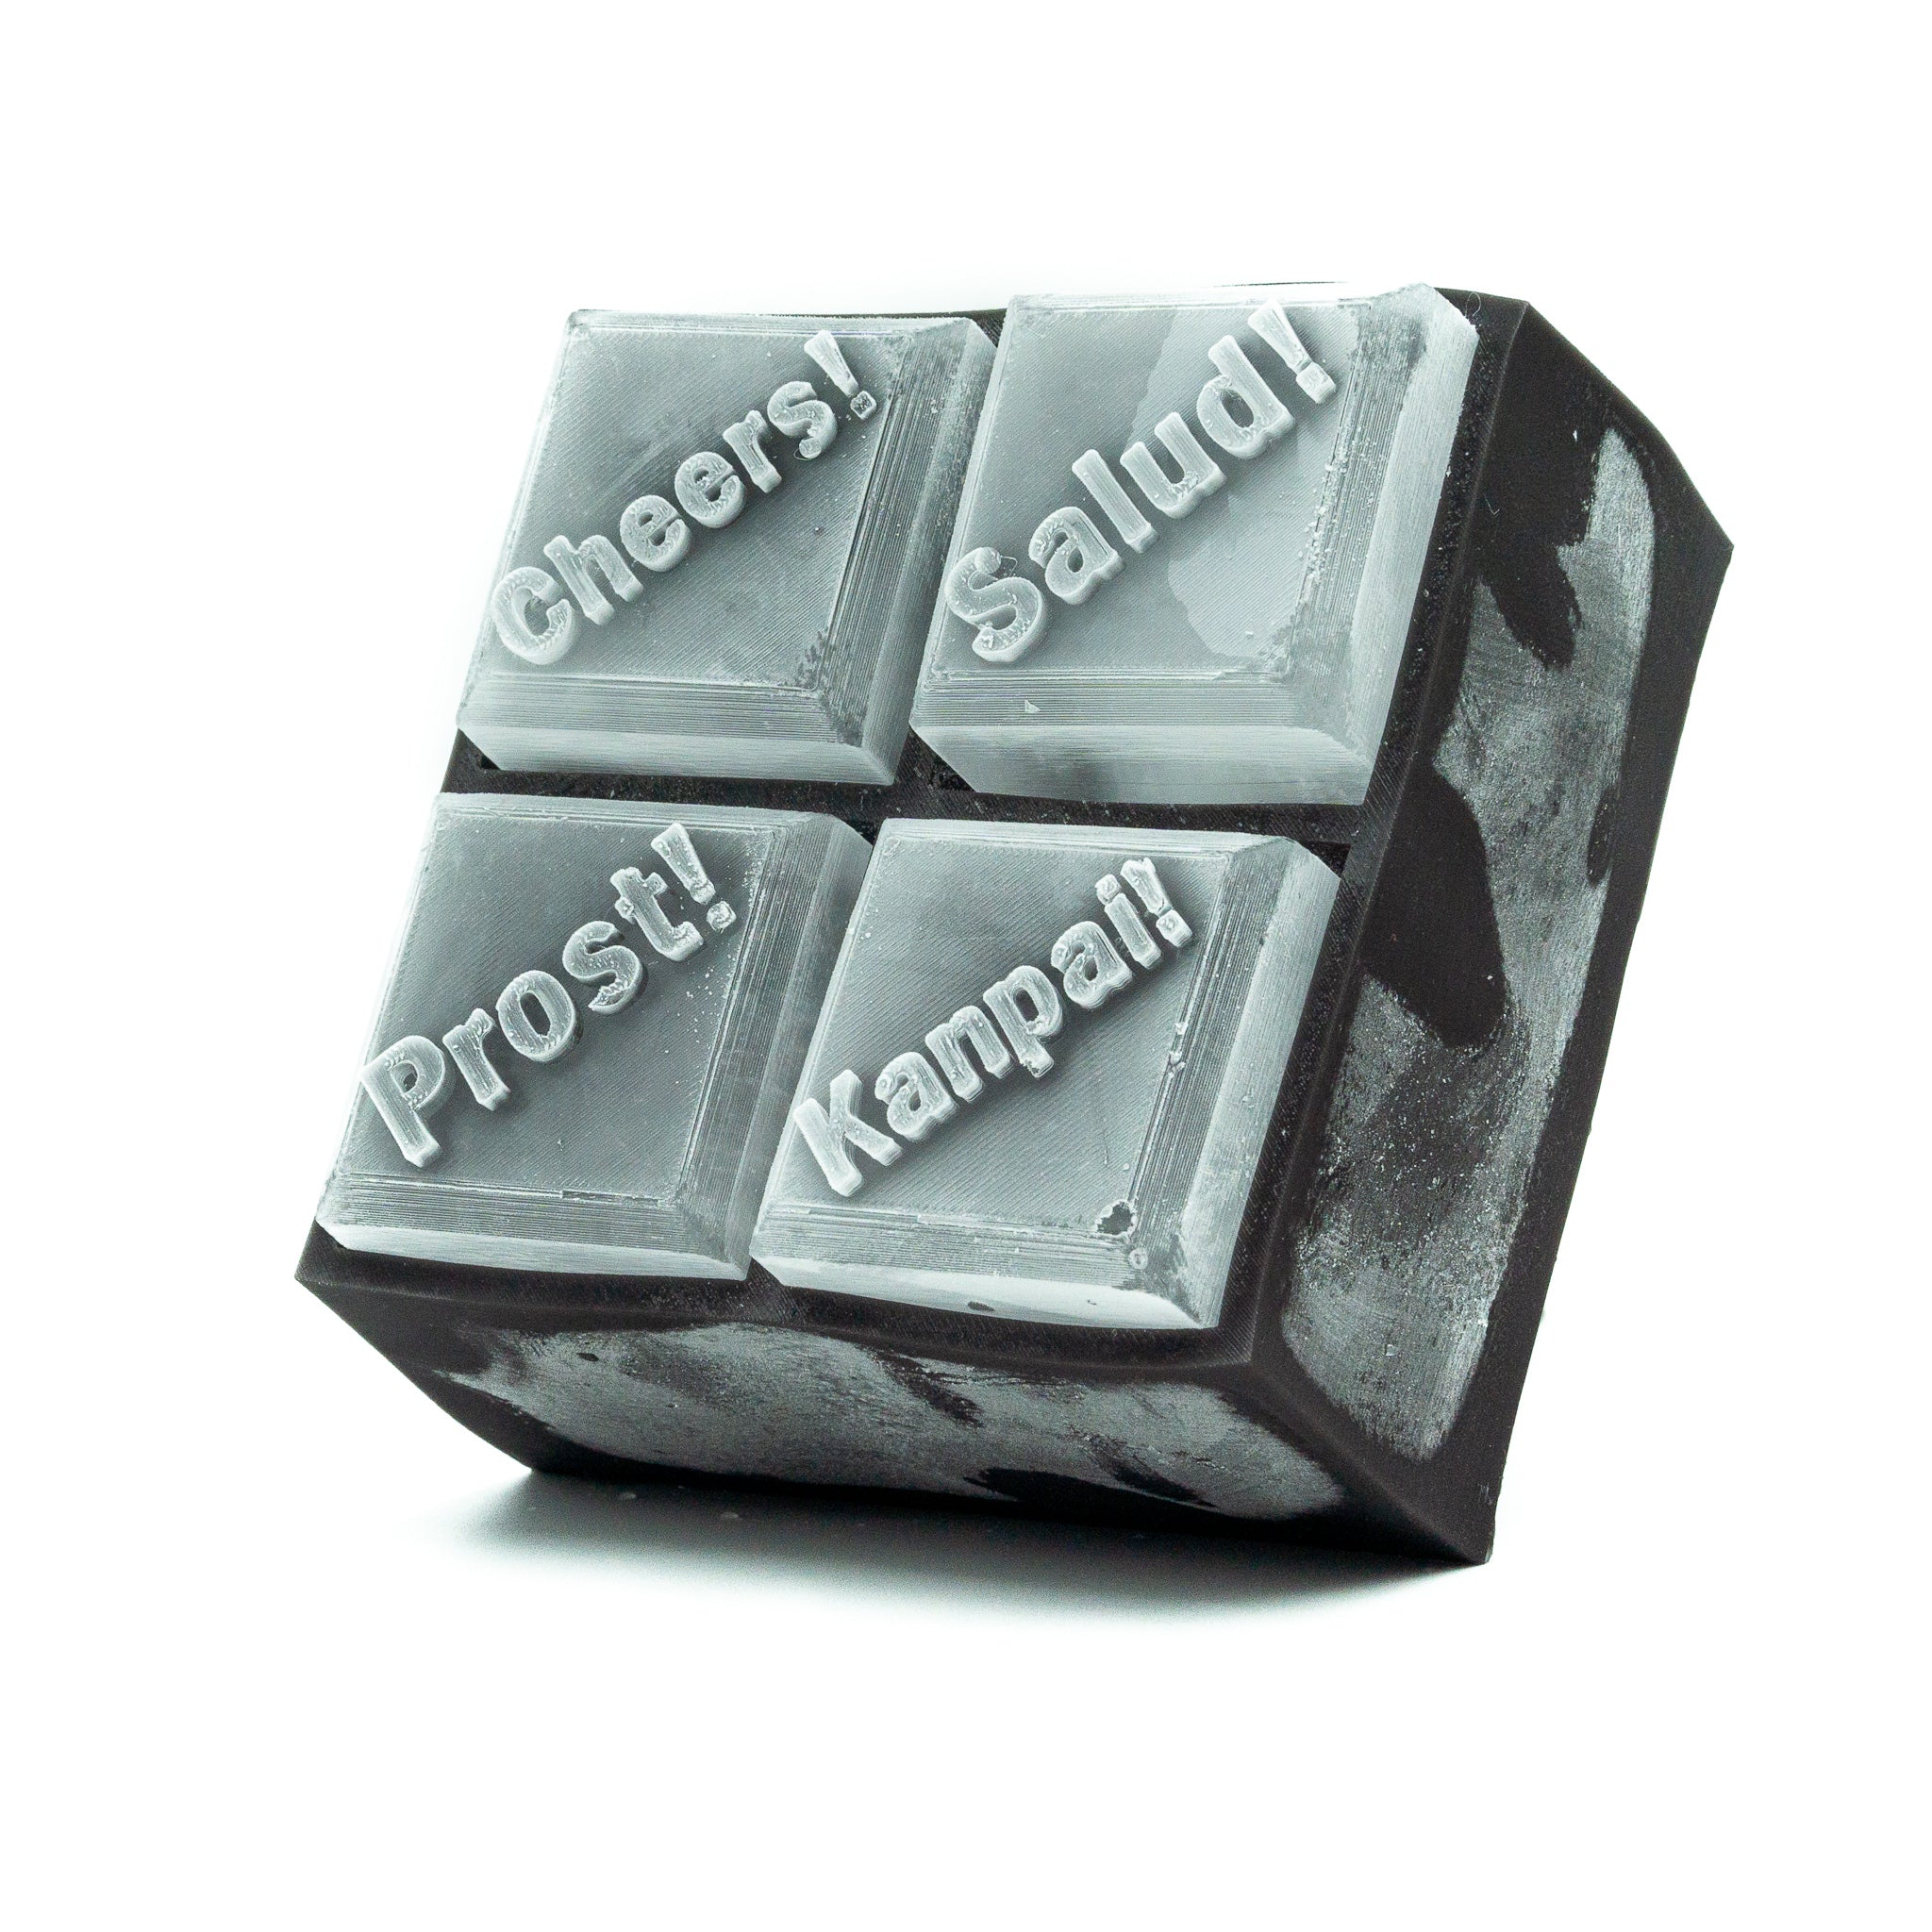 Siligrams - Our super popular custom monogram ice cube